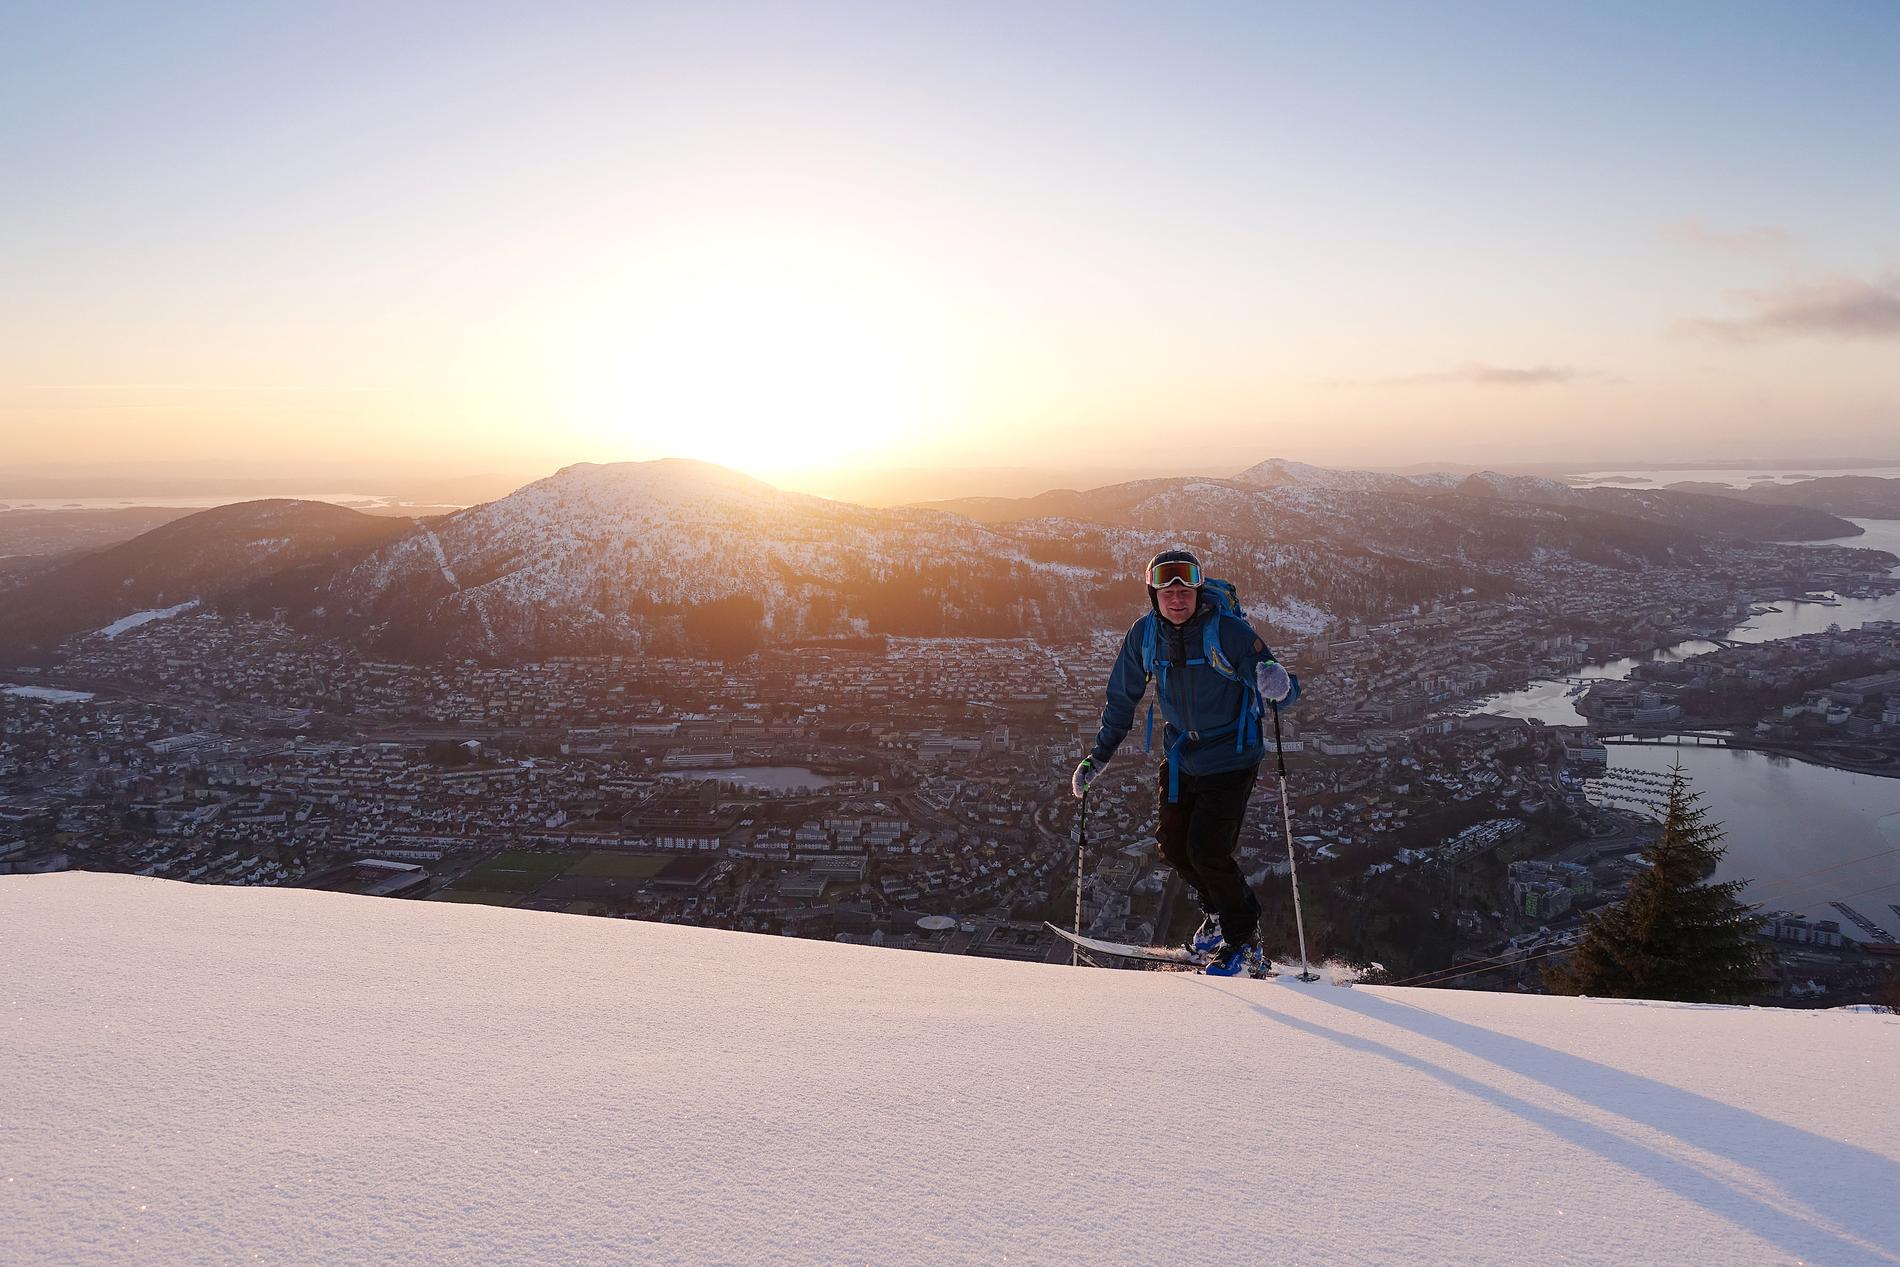 HISTORISK: Heldige er vi som fekk oppleva snøvinteren i Bergen i 2018. Asbjørn Hellås på veg til byens tak i solnedgangen.